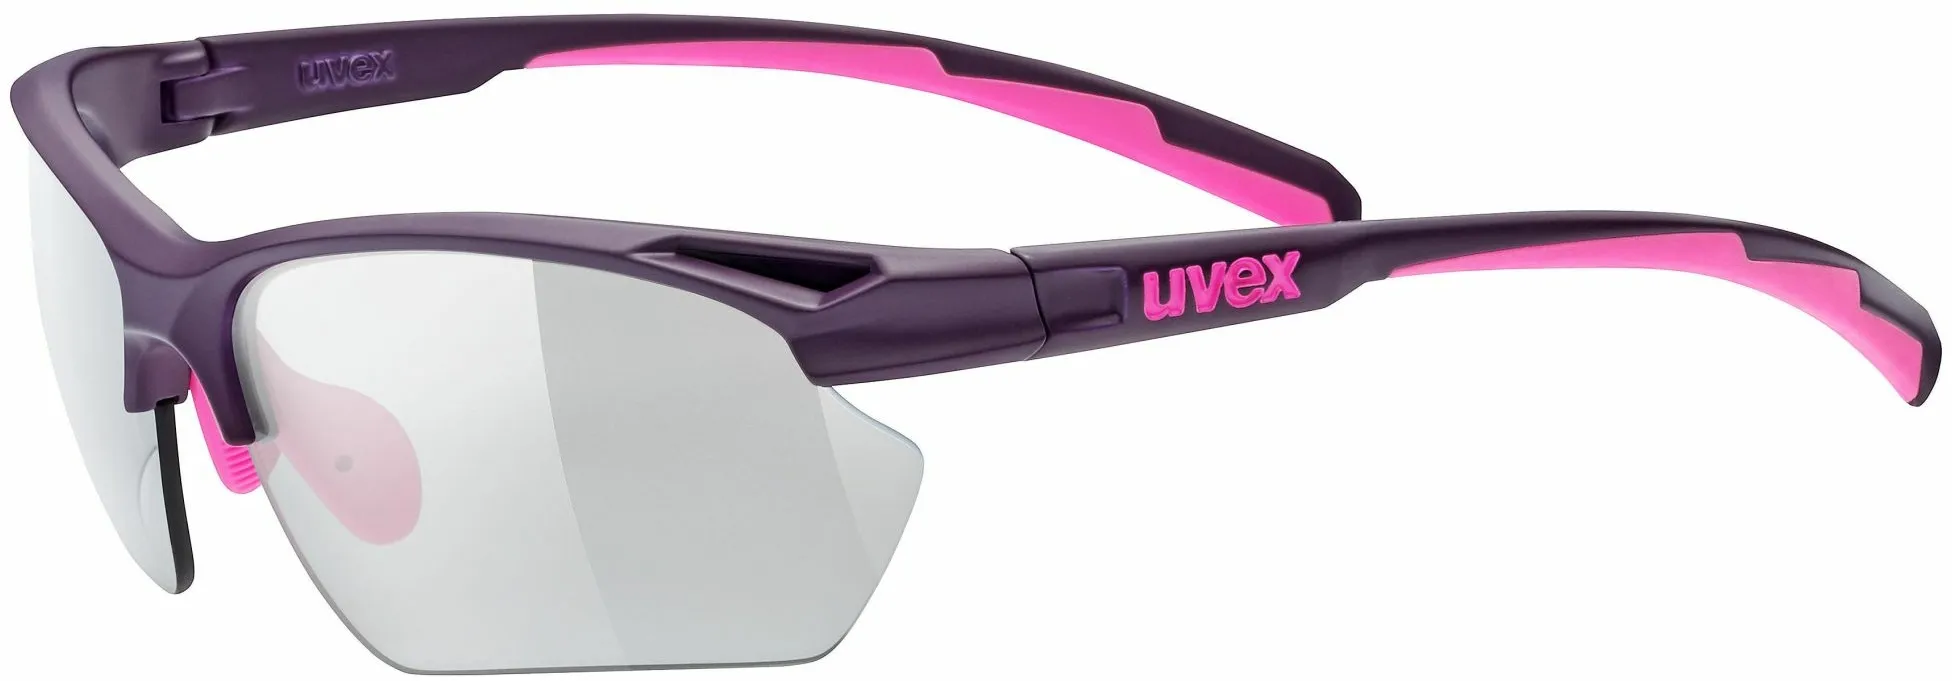 Occhiali sportivi uvex sportstyle 802 sma.vario one size viola-rosa